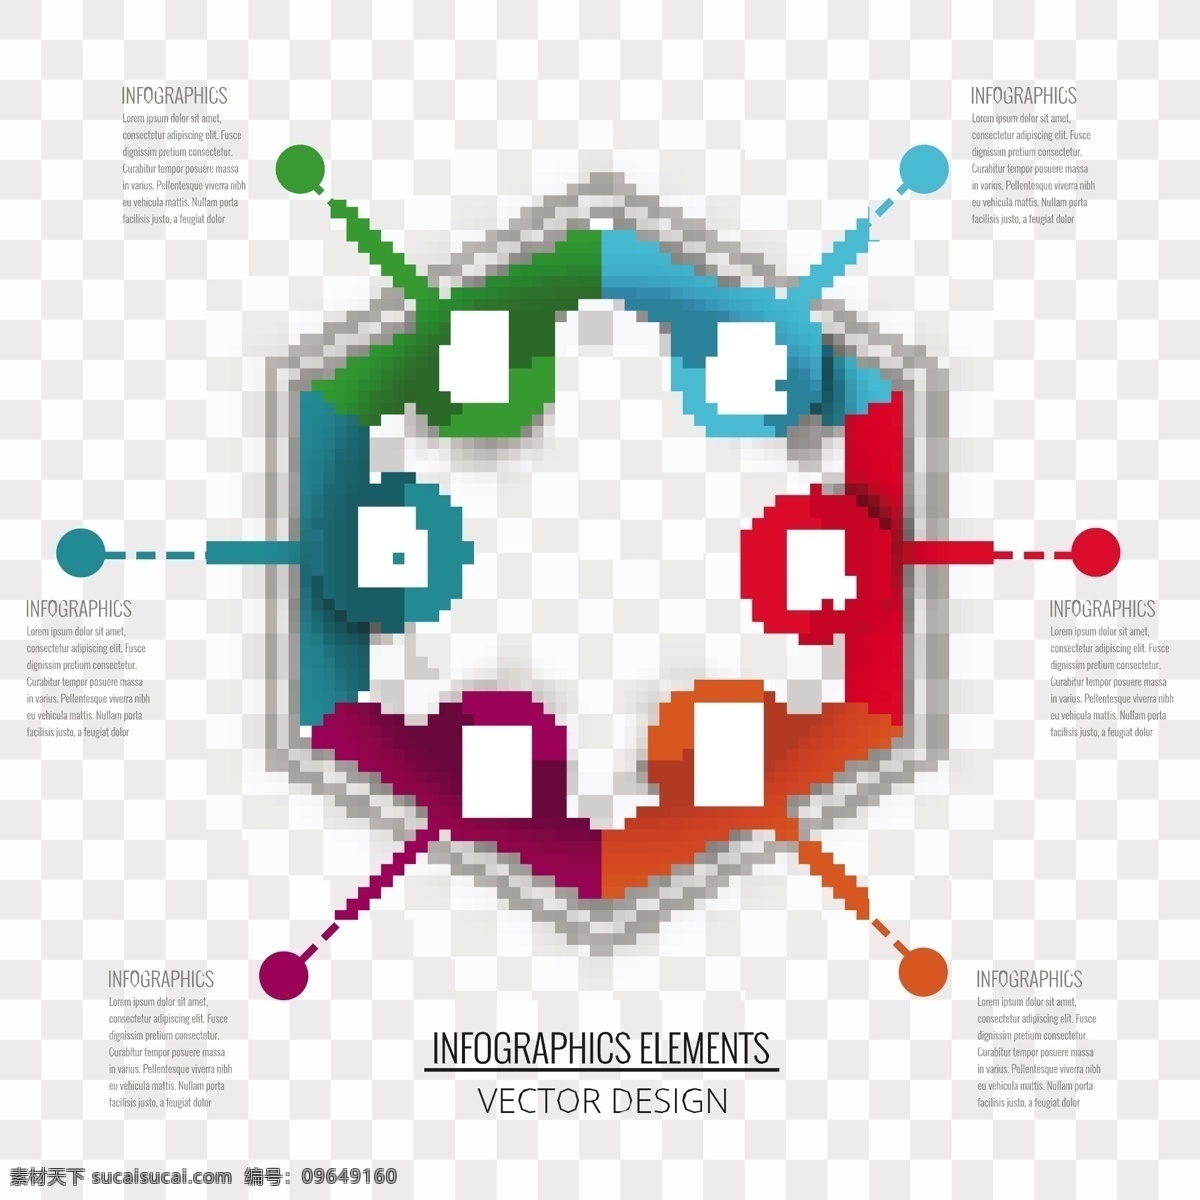 六角形的图表 图表 业务模板 图形 营销 流程 数据 信息 步骤 生长 发展 进化 进步 选择 前进 相